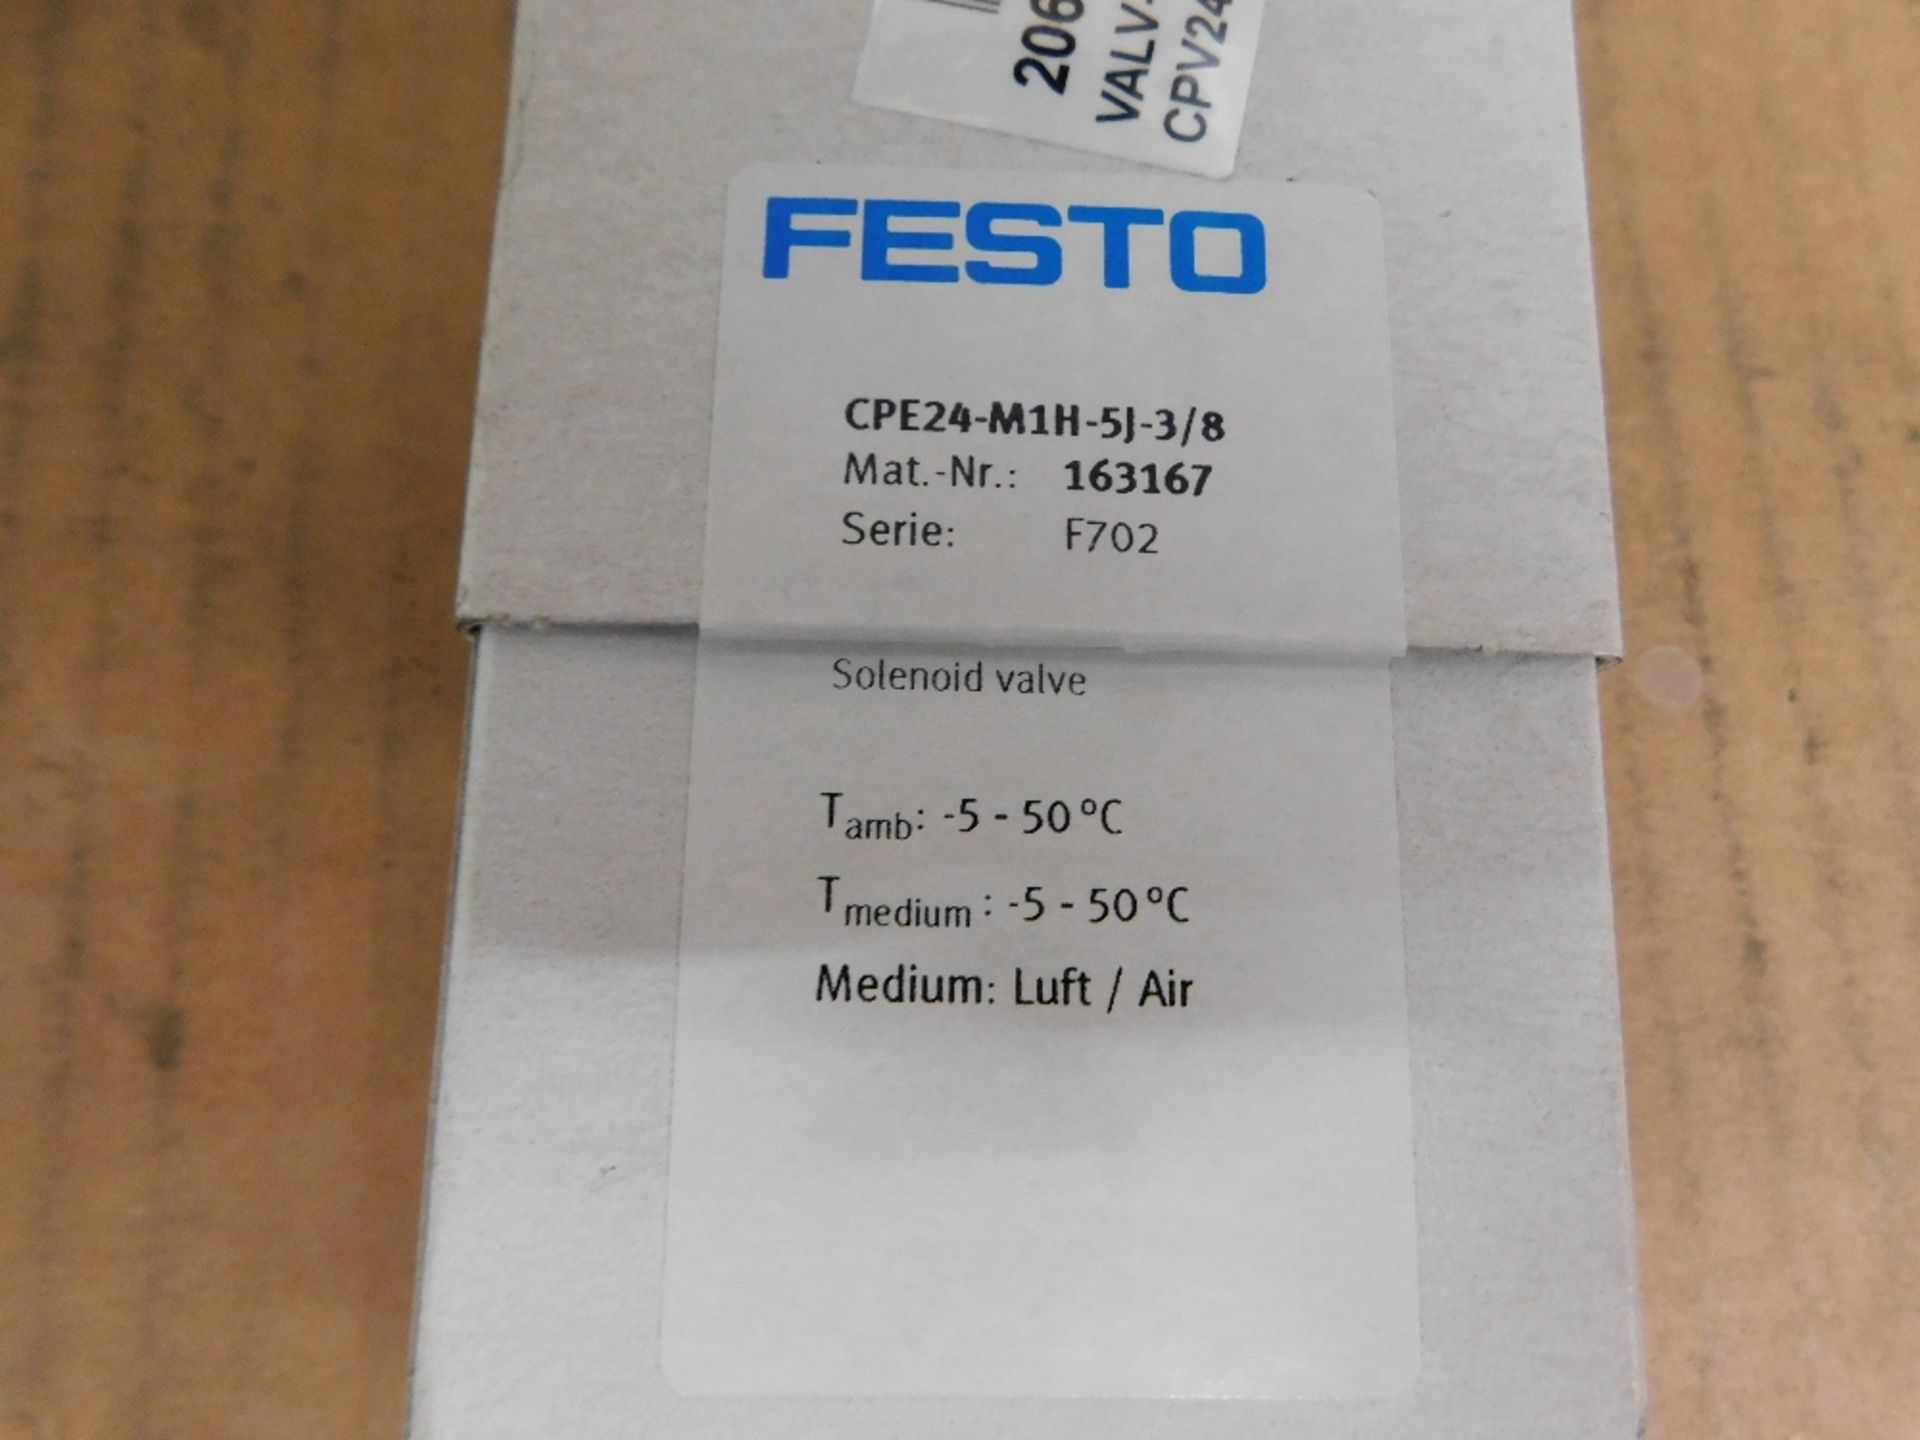 1x Festo Unused Surplus CPE24-M1H-5J-3/8 Misc. Valves Solenoid 24VDC 1.5W - Image 2 of 4